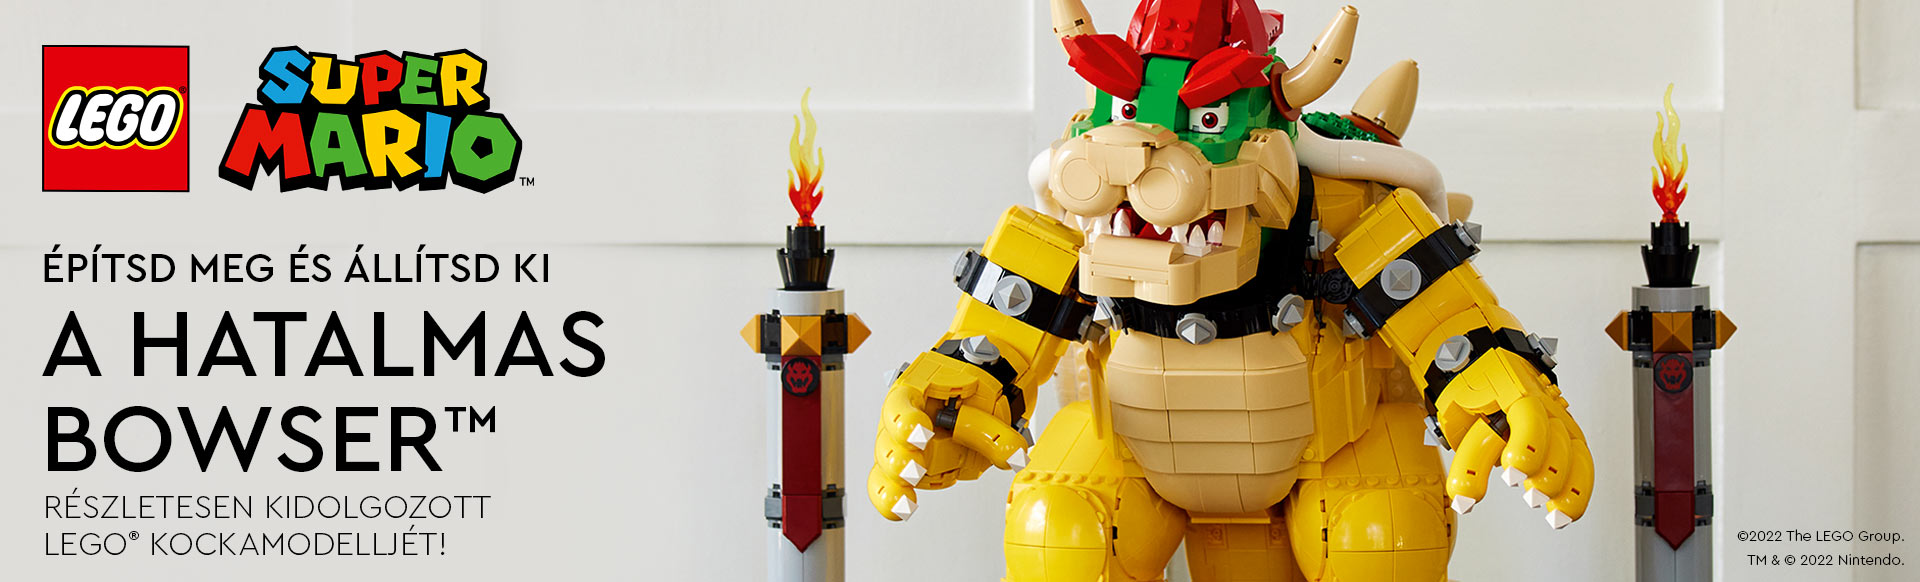 Építsd meg és állítsd ki A hatalmas Bowser™ részletesen kidolgozott LEGO® kockamodelljét!